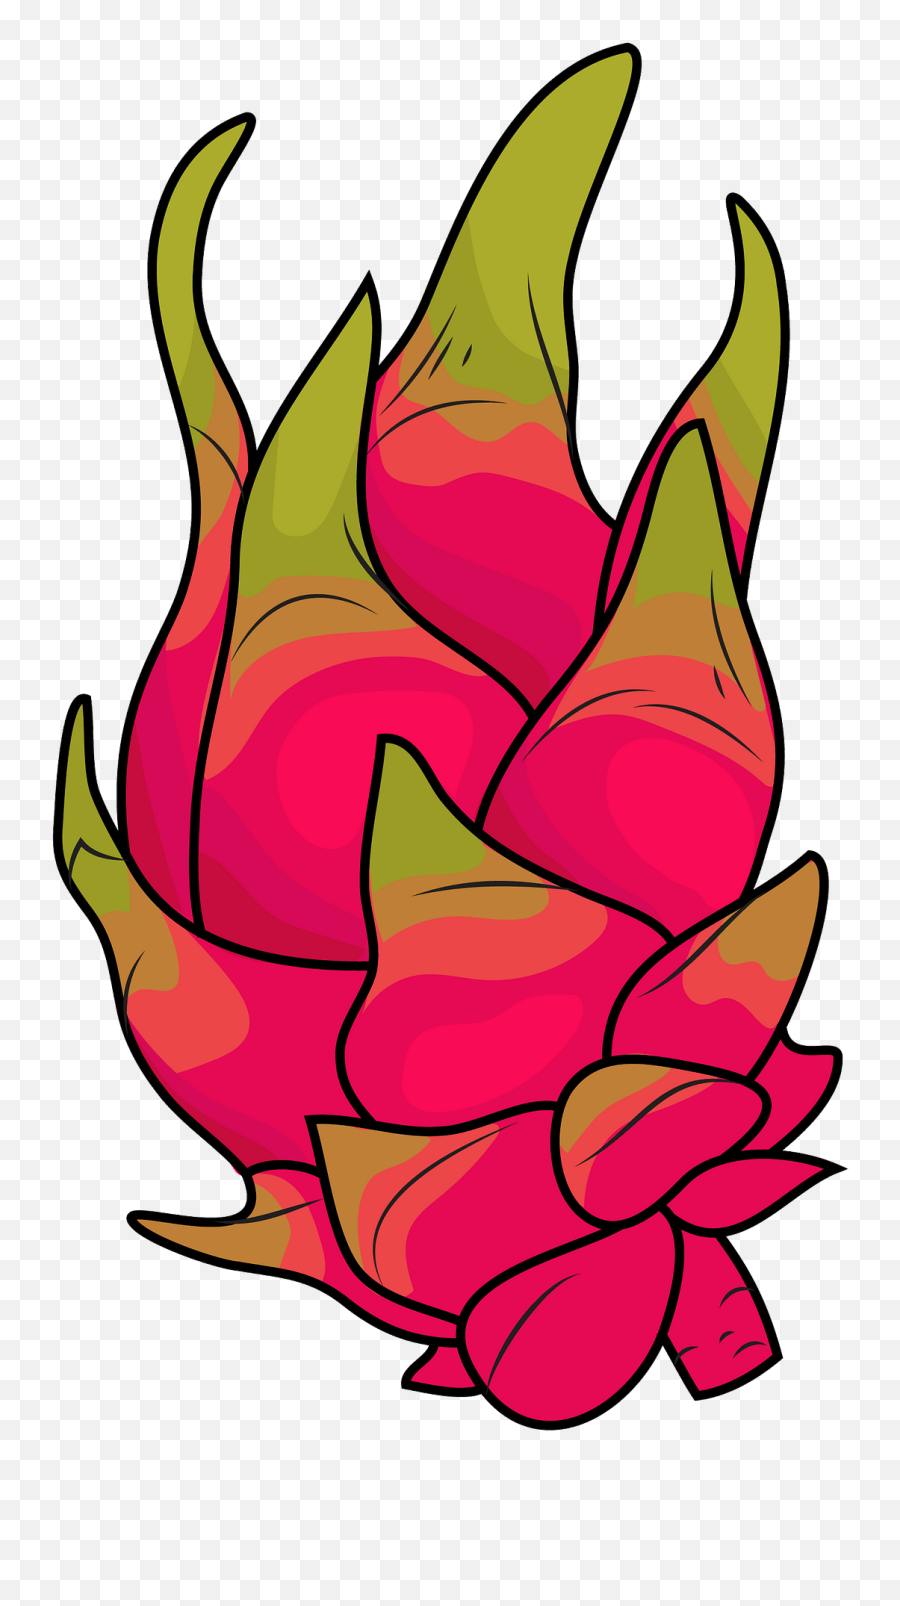 Dragon Fruit Clipart - Transparent Dragon Fruit Clipart Emoji,Fruit Clipart